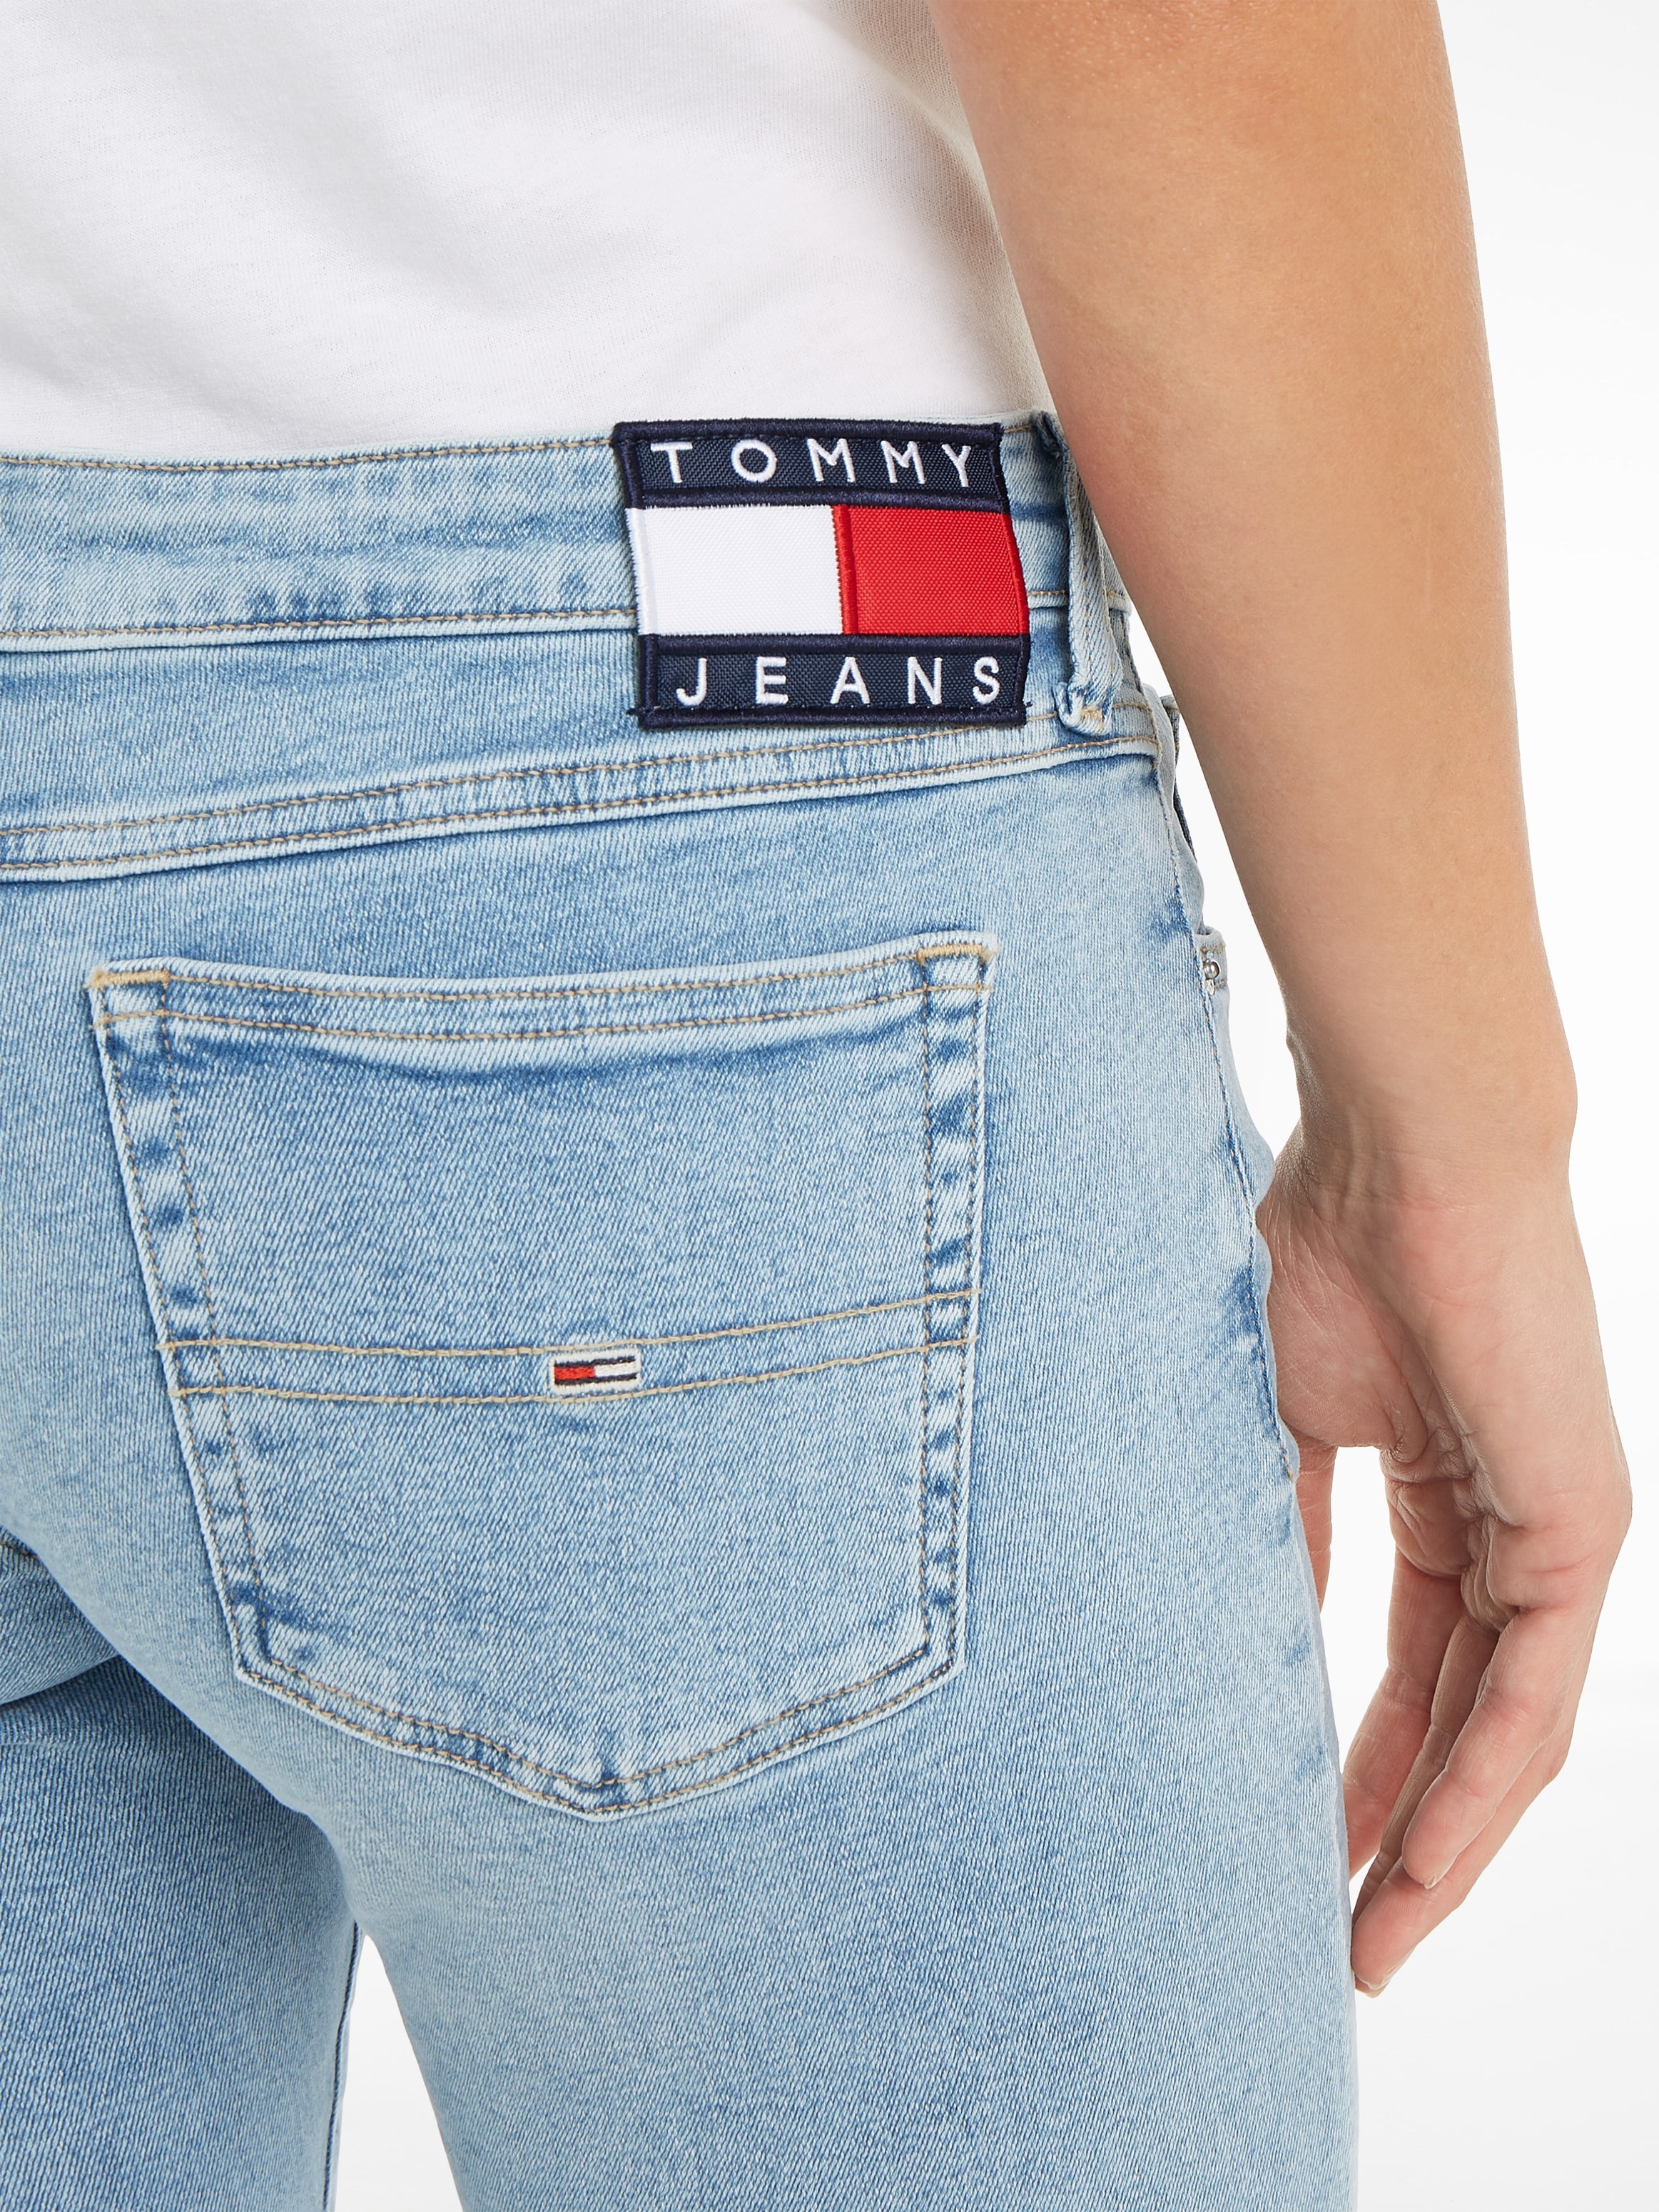 Tommy bei ♕ Jeans Labelapplikationen mit Skinny-fit-Jeans, dezenten